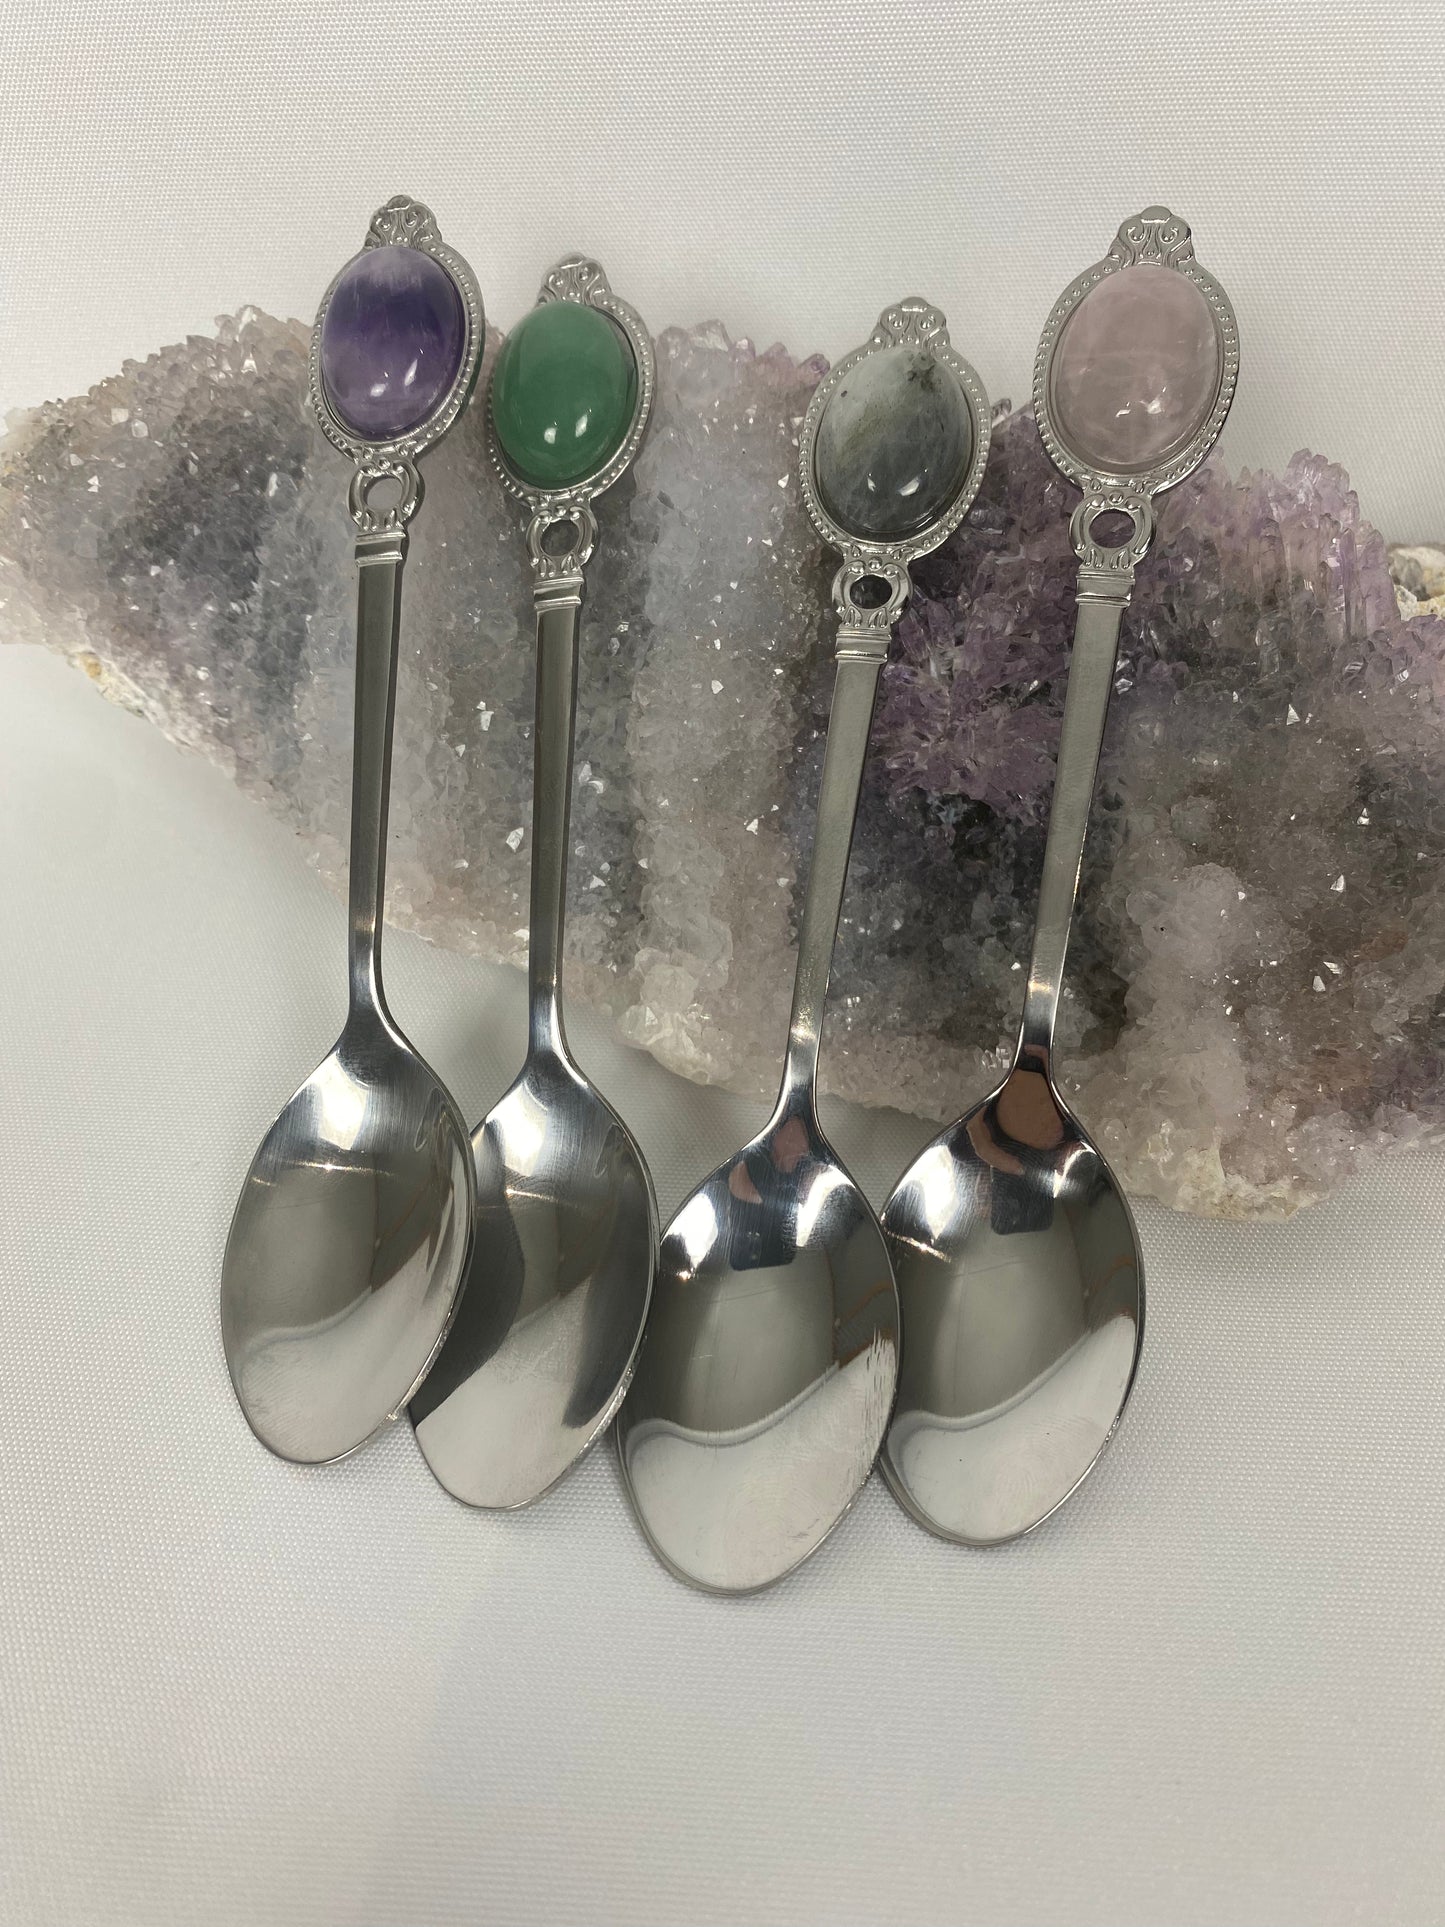 Crystal spoons